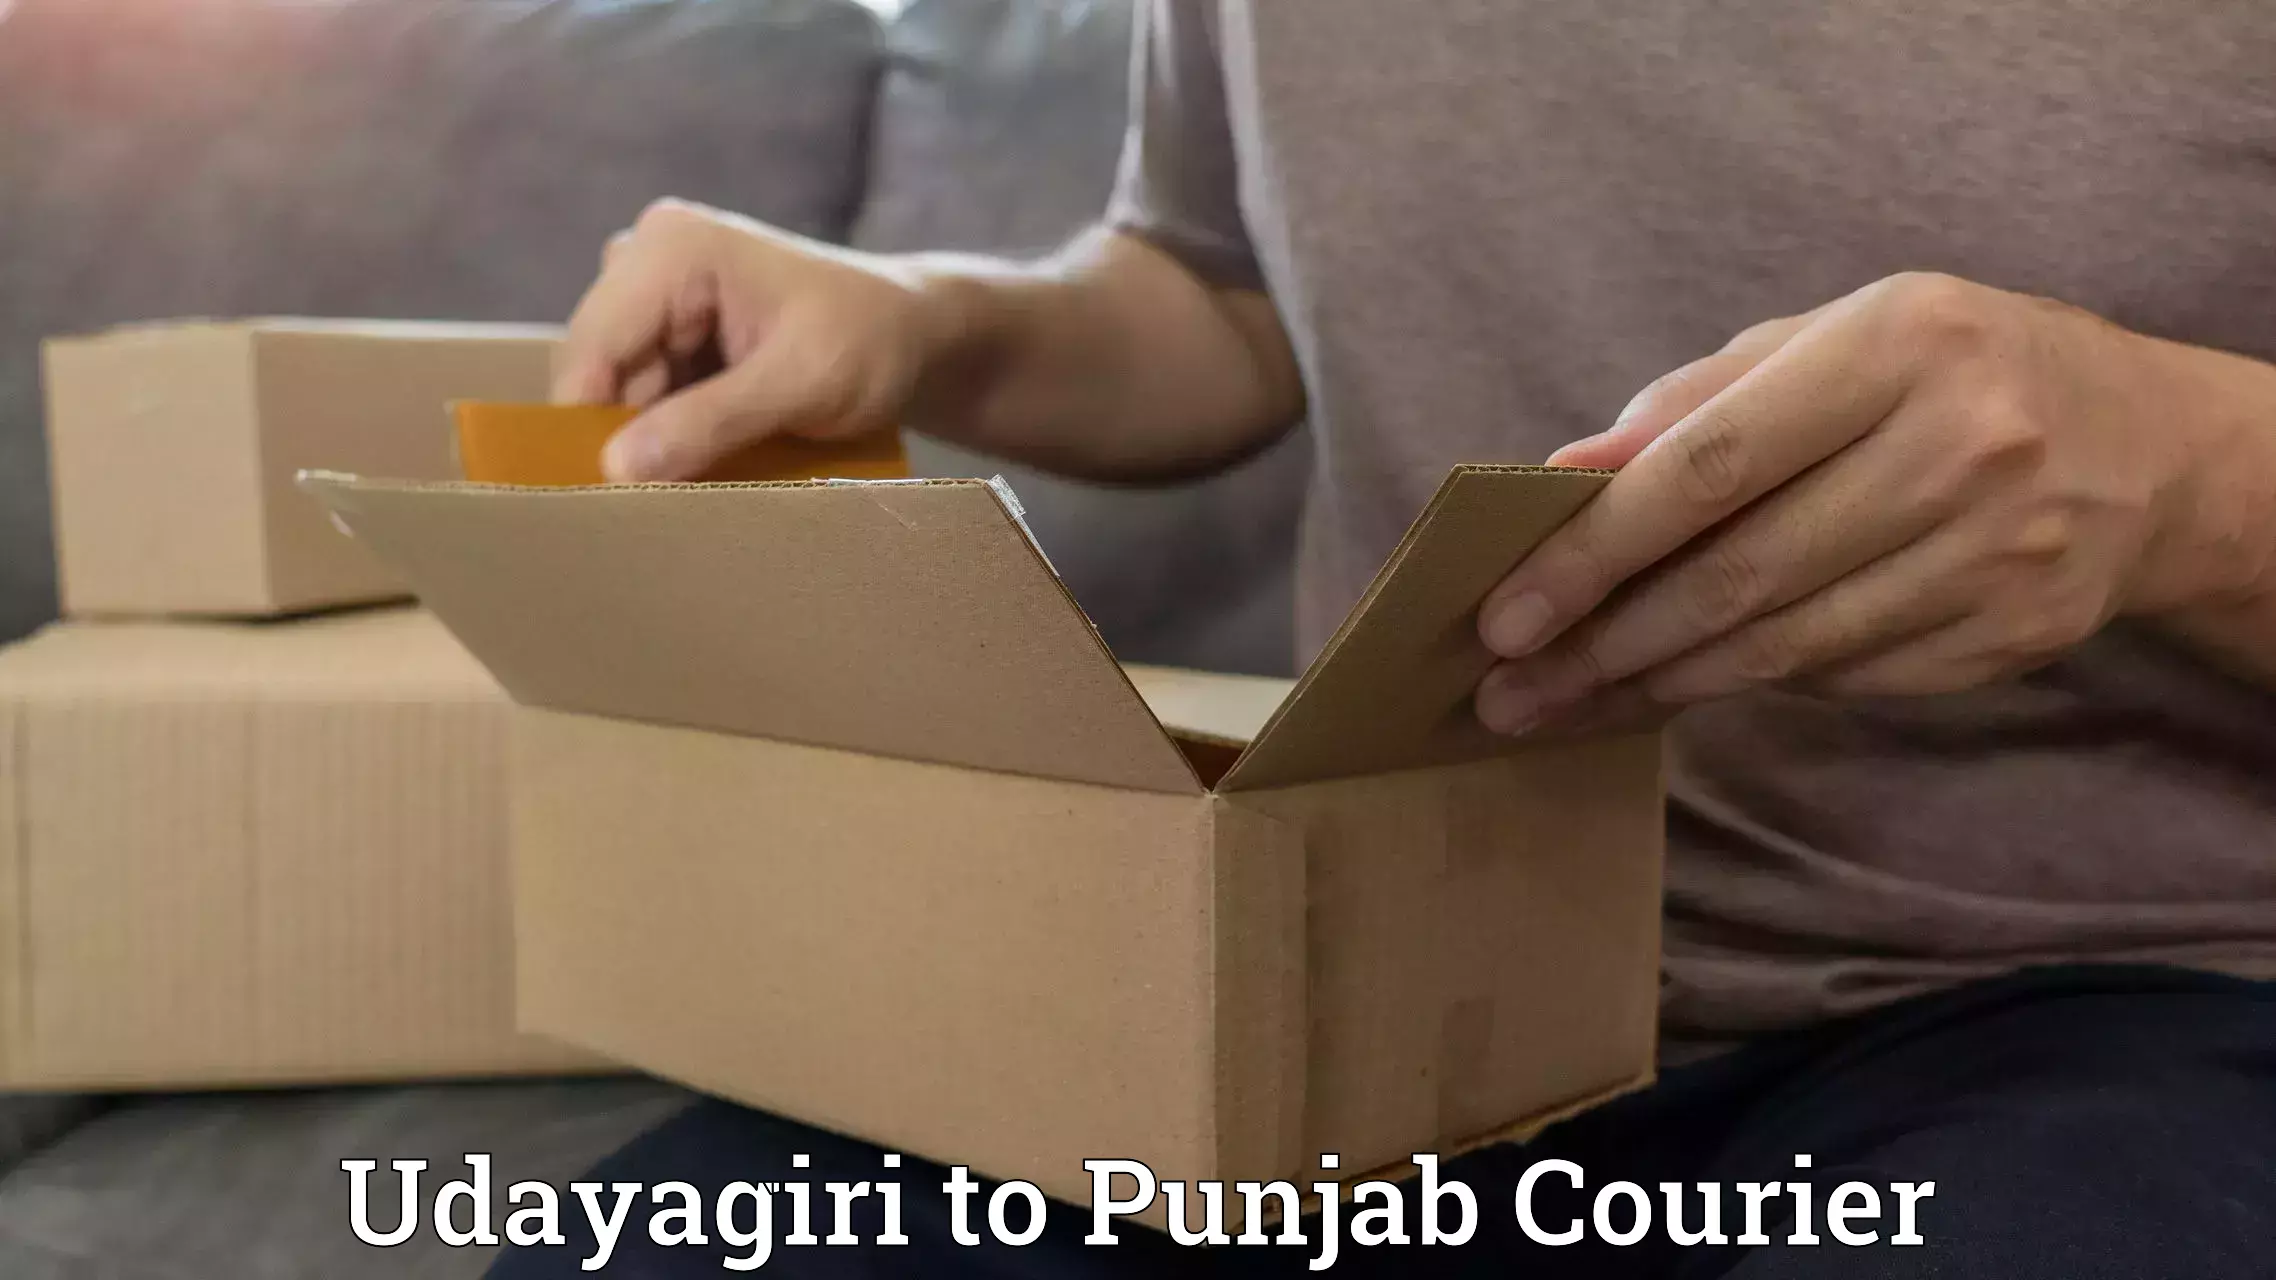 Large package courier Udayagiri to Amritsar